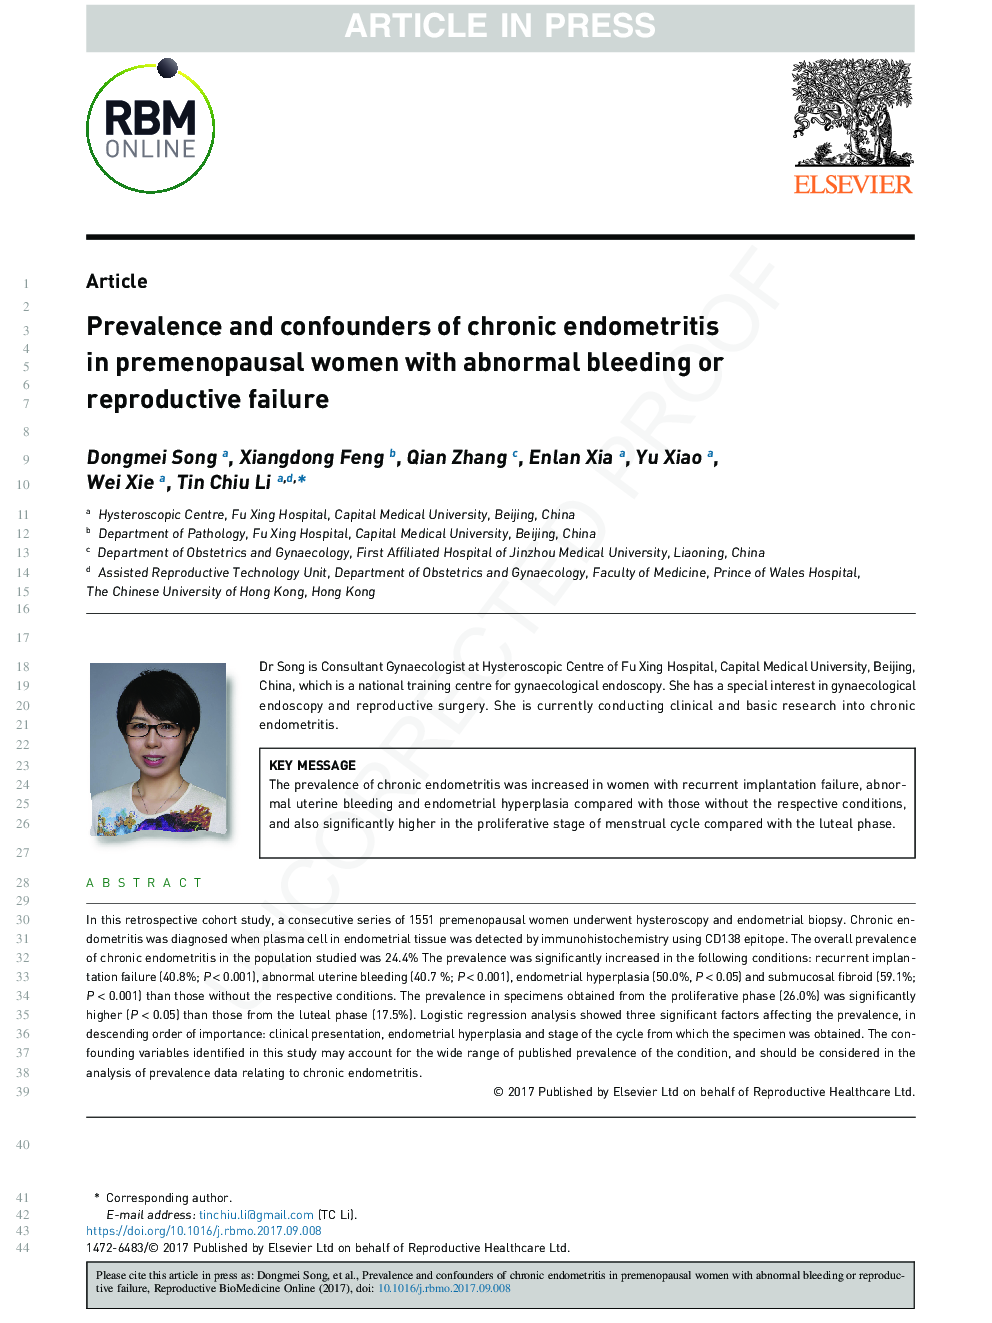 شیوع و عوارض آندومتریت مزمن در زنان یائسه با خونریزی غیرعادی یا نارسایی مزمن 